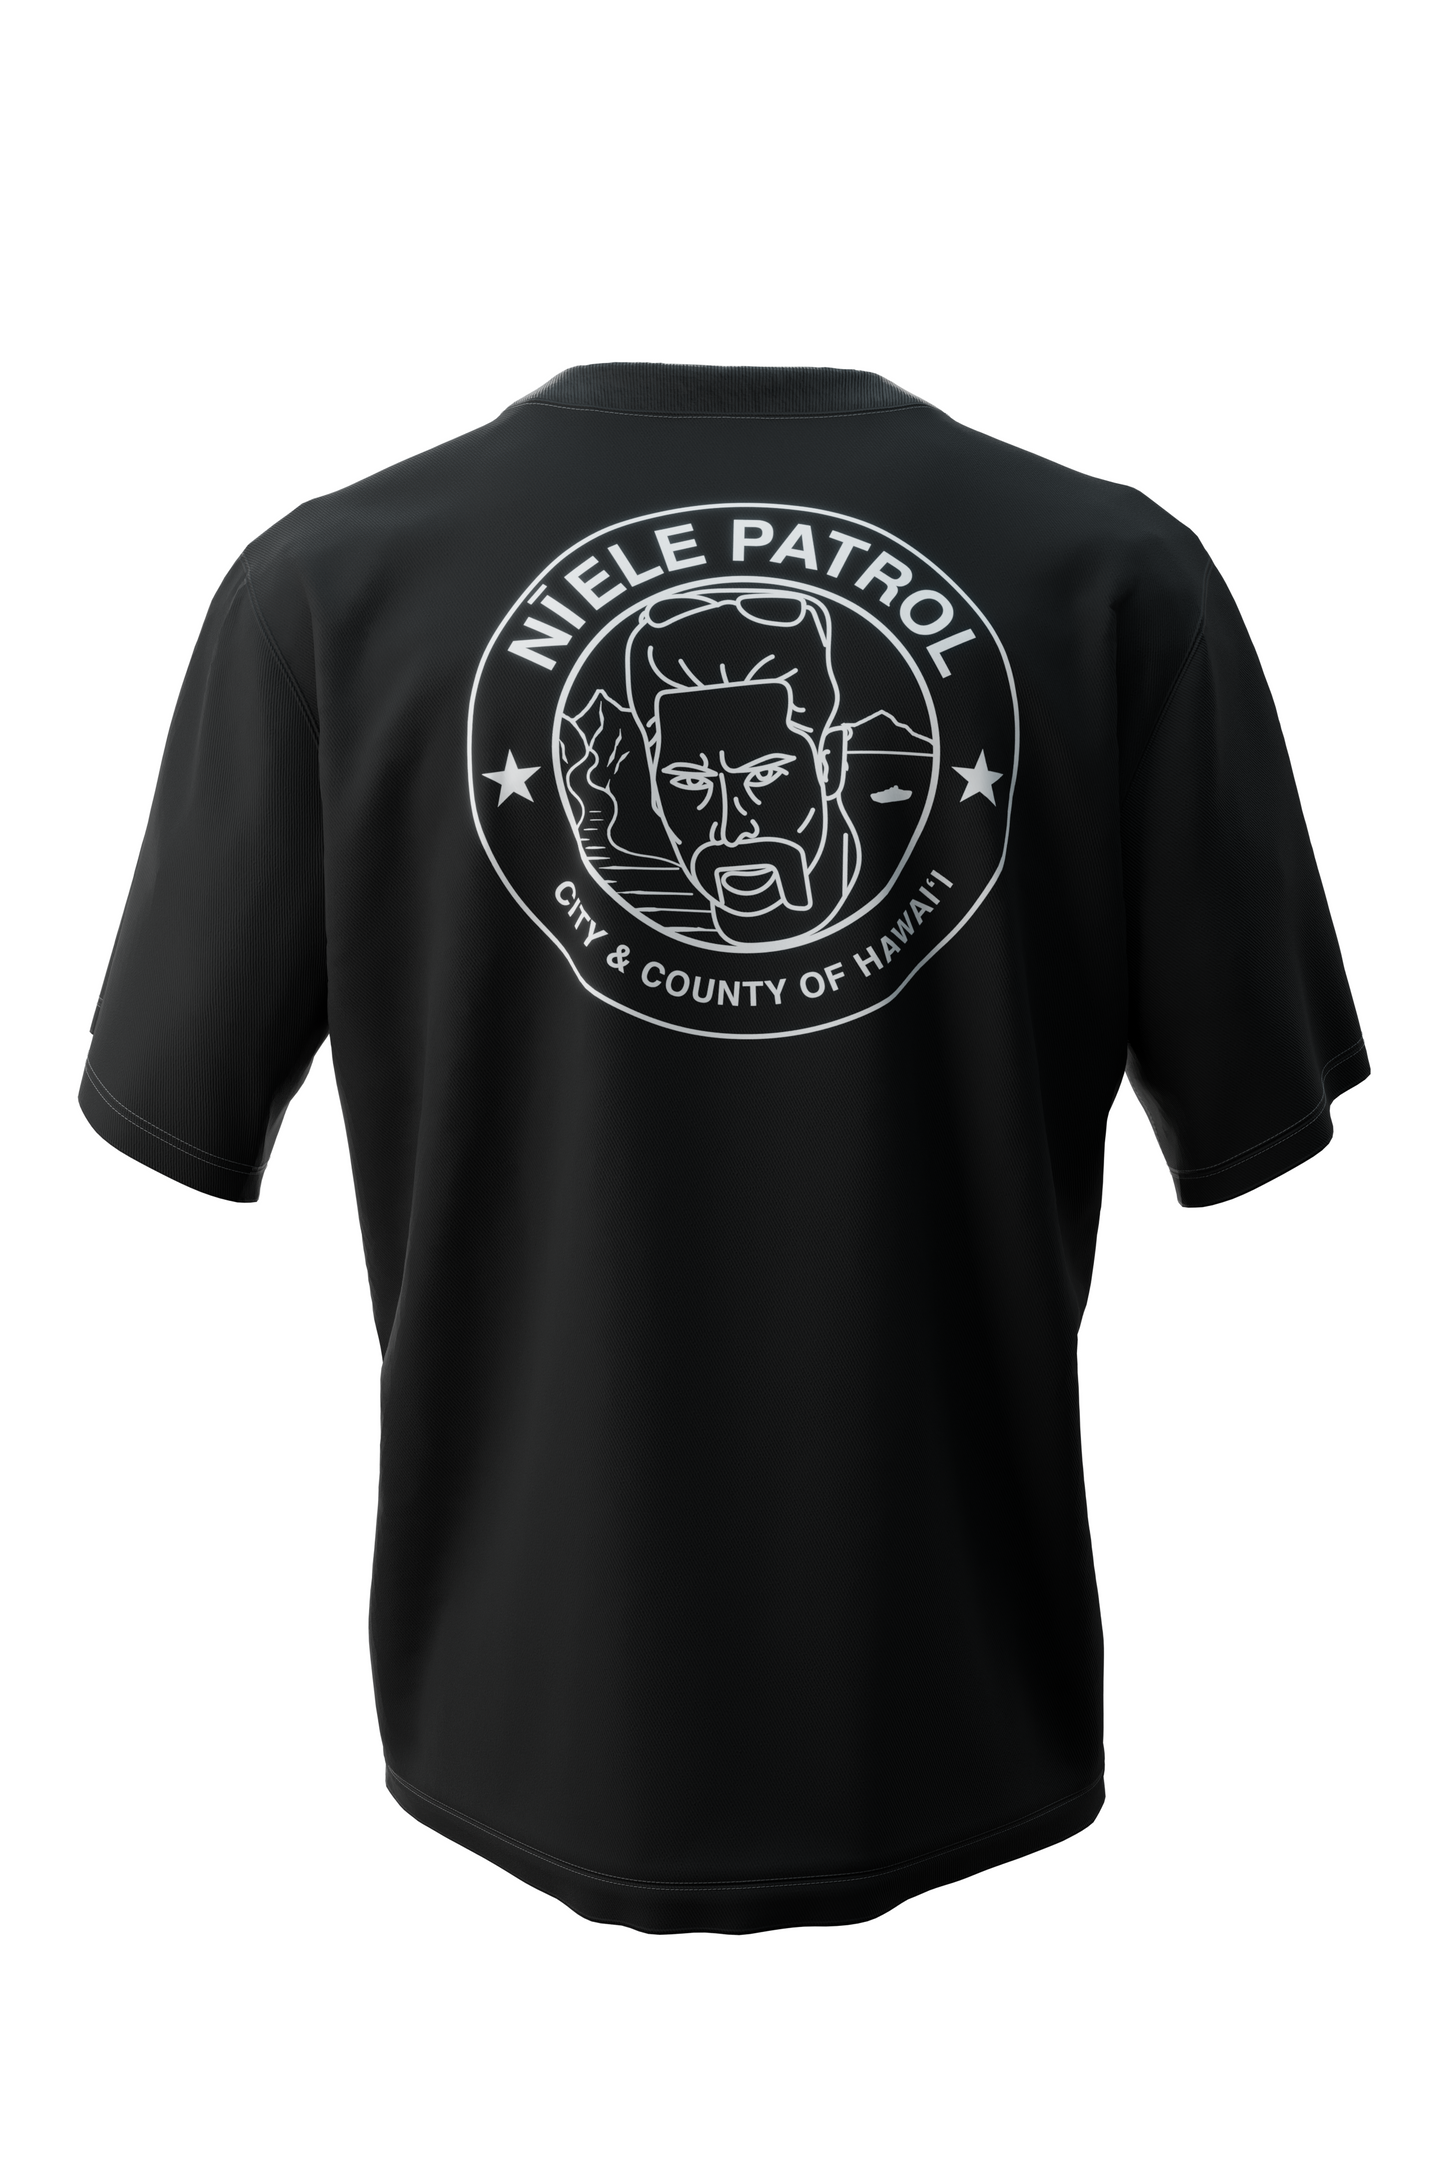 Niele Patrol Shirt